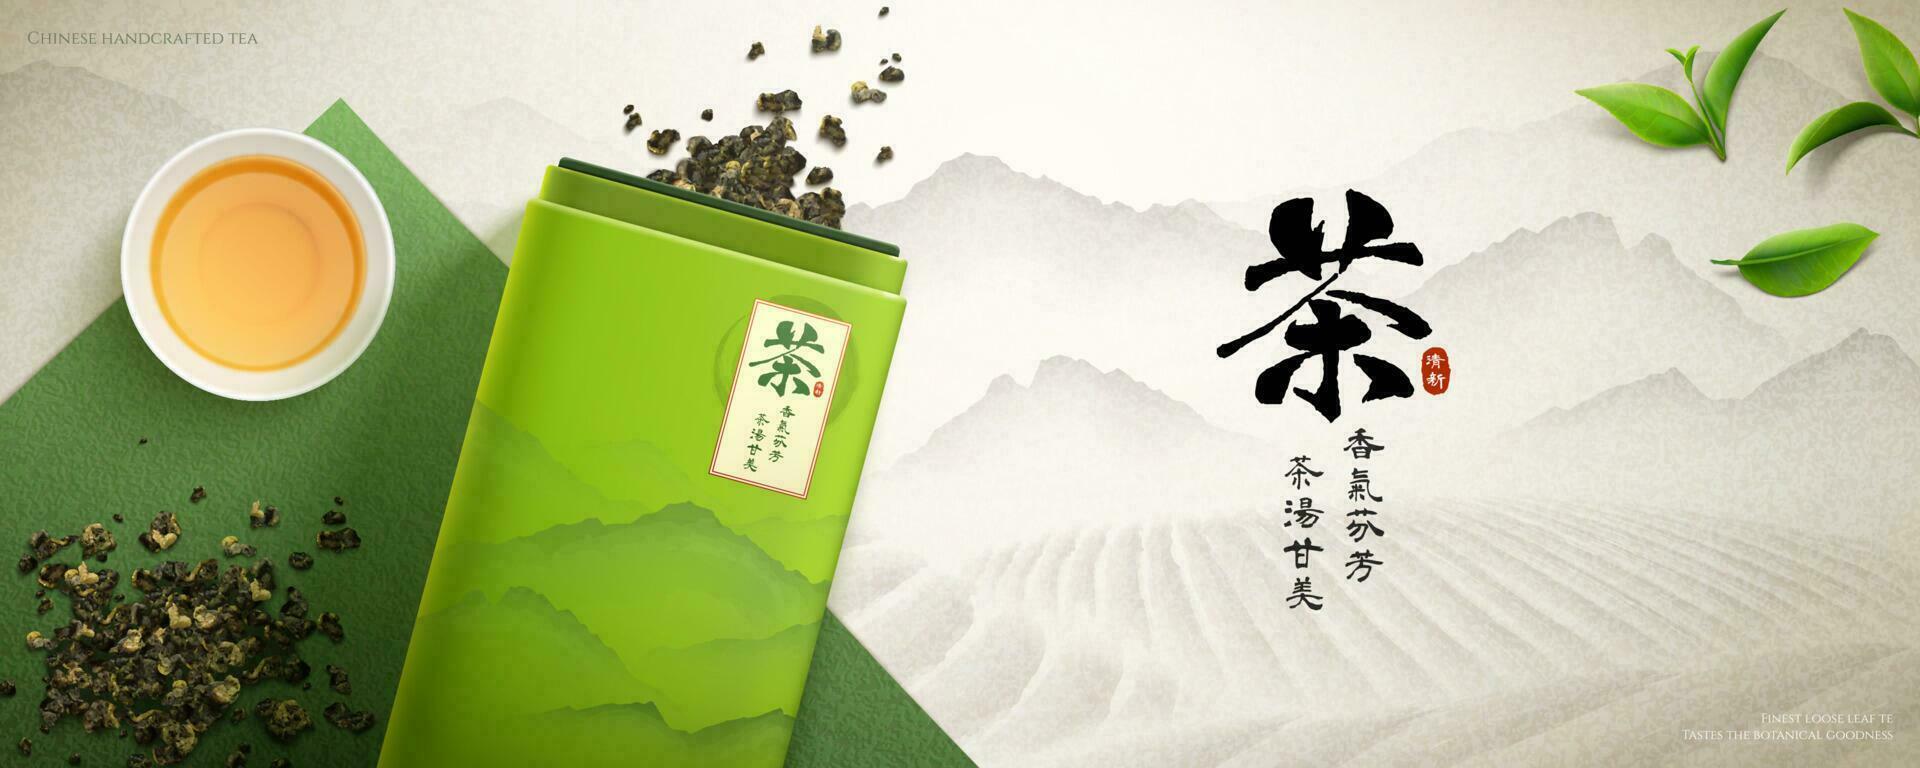 3d kinesisk te baner annons. illustration av te paket och spridd lösa löv med te plantage i bakgrund. kinesisk översättning, te av aromatisk löv och ljuv smakar vektor